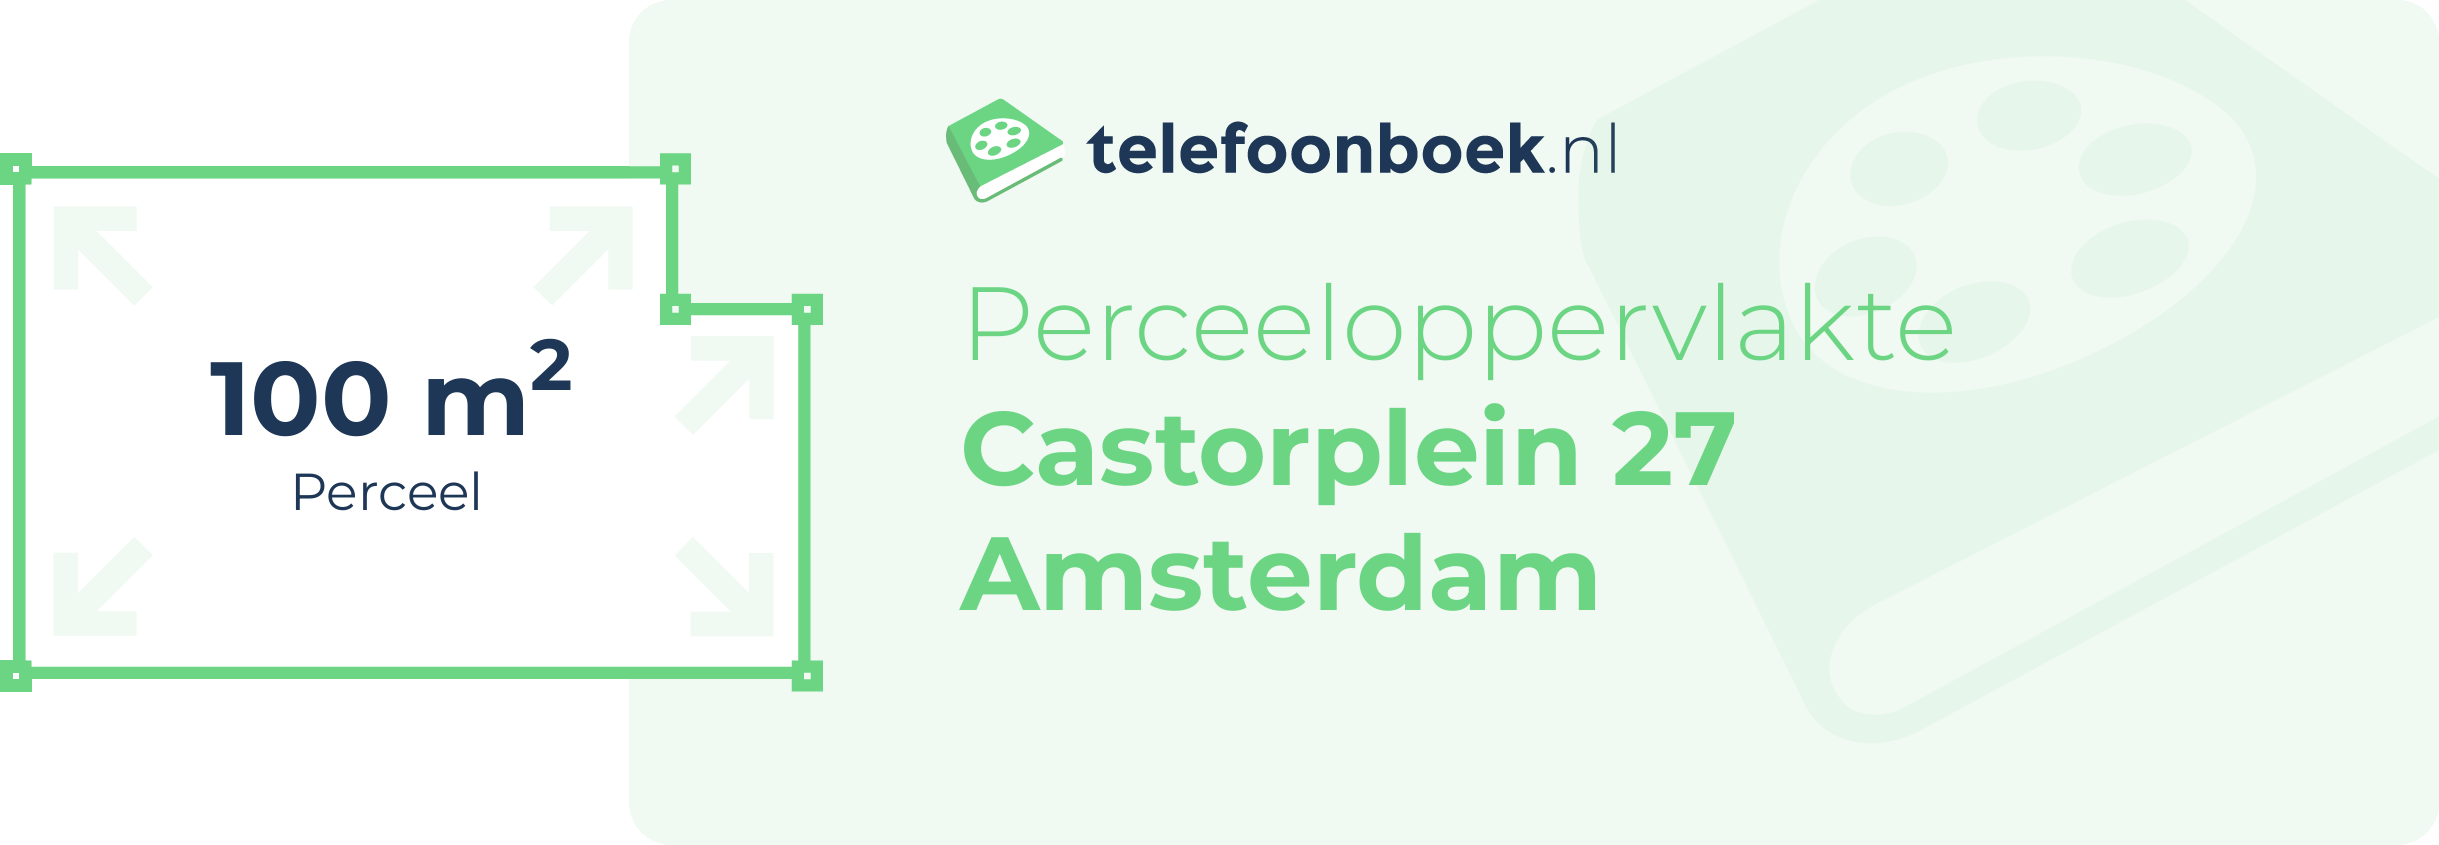 Perceeloppervlakte Castorplein 27 Amsterdam